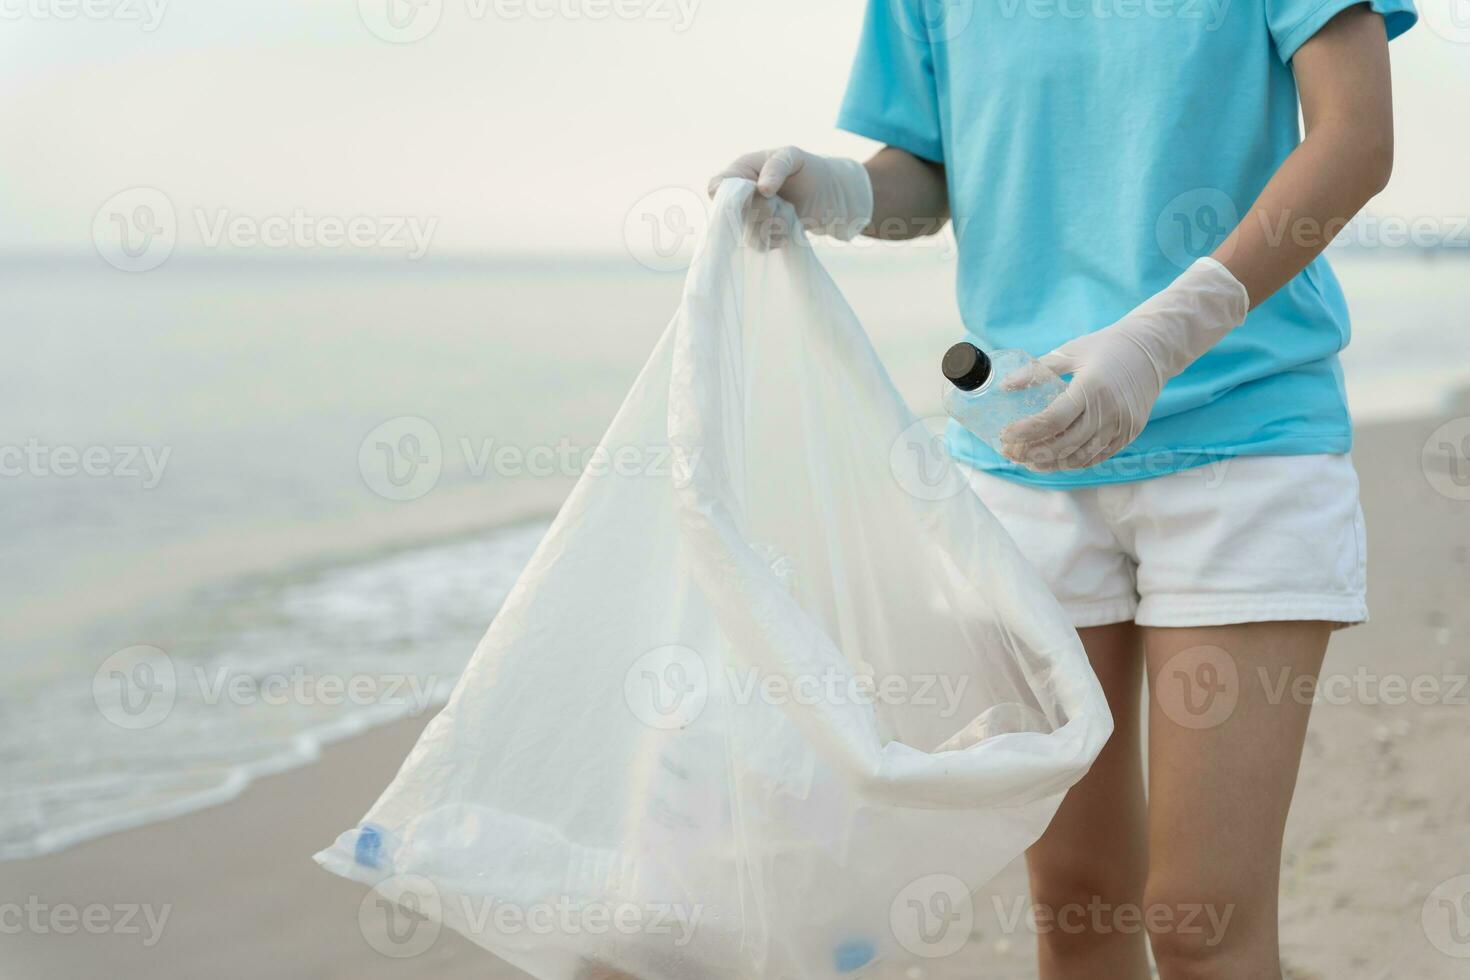 salvar océano. voluntario recoger arriba basura basura a el playa y el plastico botellas son difícil descomponer evitar daño acuático vida. tierra, ambiente, verdeado planeta, reducir global calentamiento, salvar mundo foto